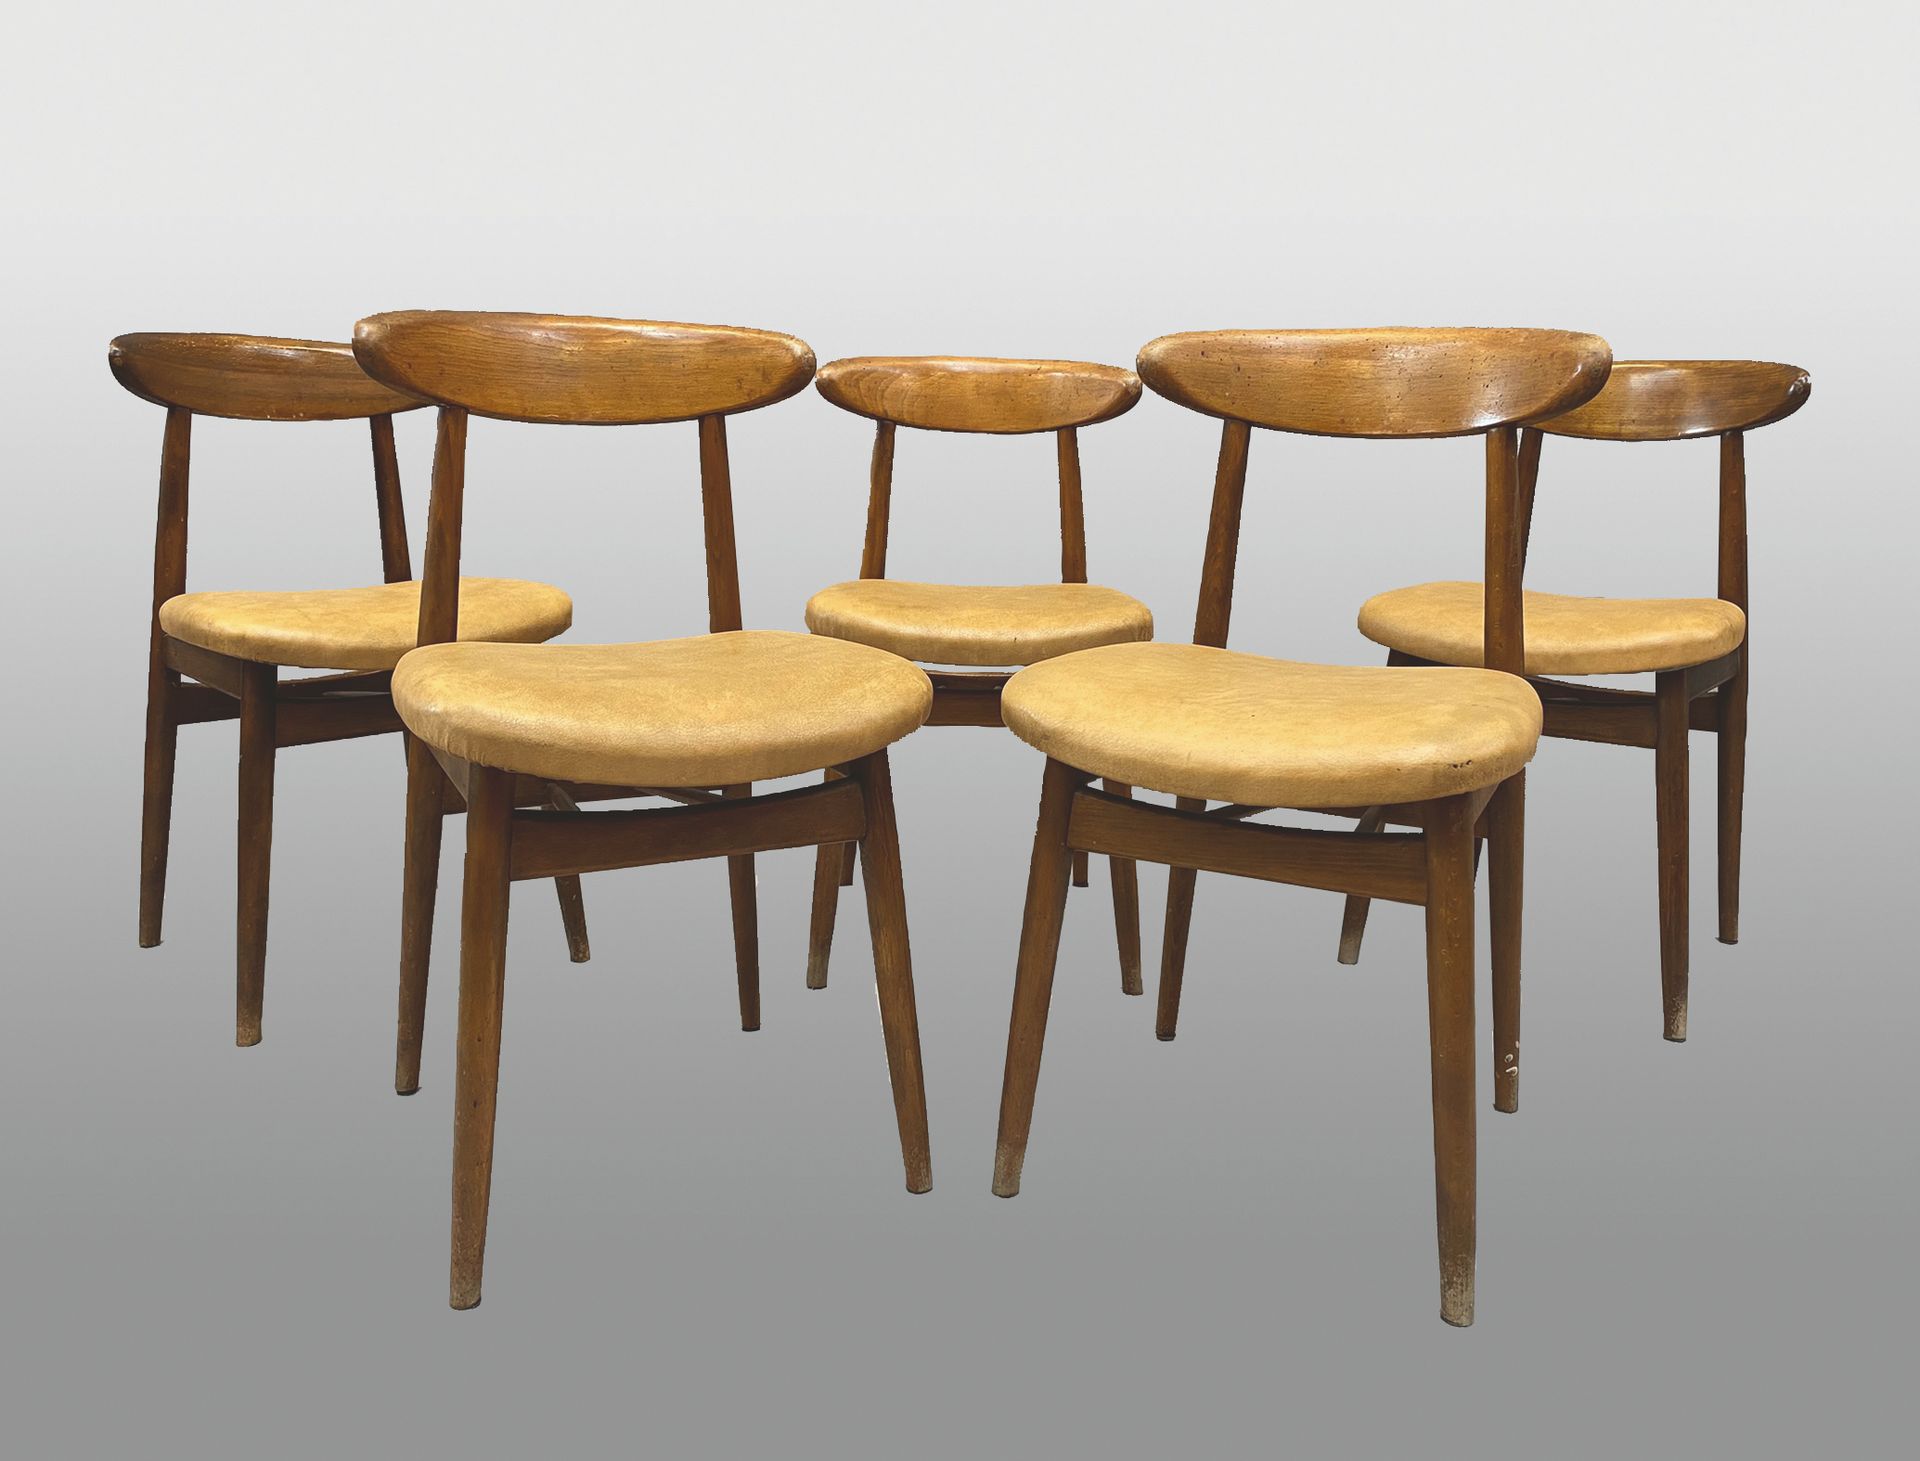 Null 一套五把染色榉木椅子，带回旋镖靠背和仿皮软垫。

约1960年。

通过重新招标出售，商法第L 321-14条。